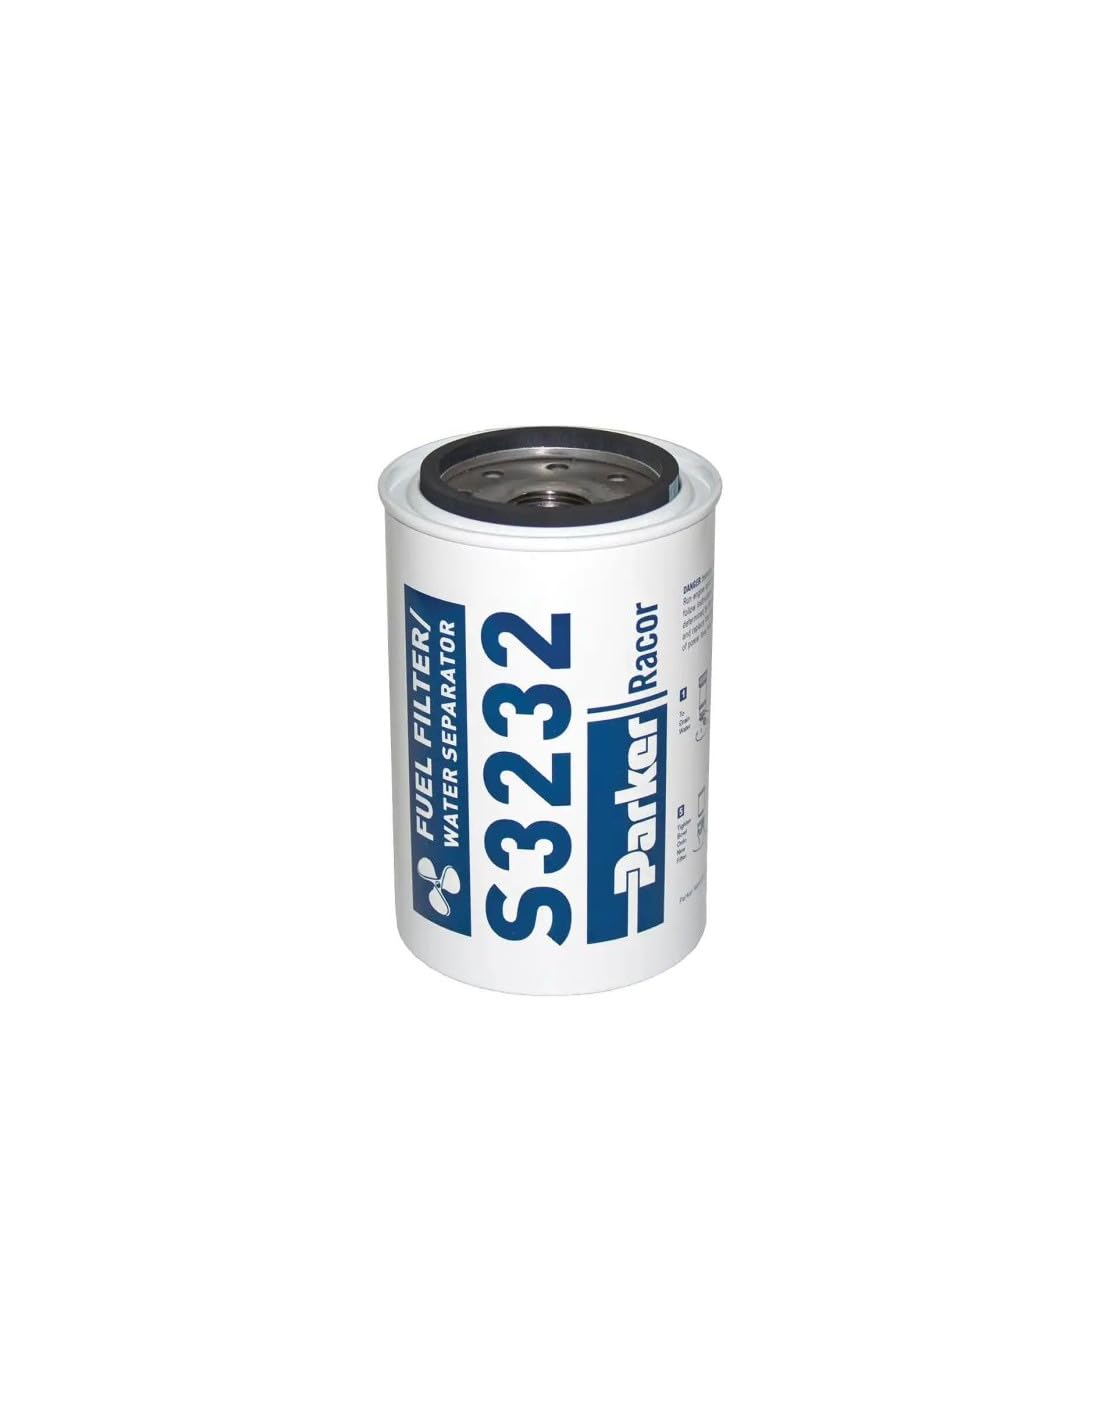 Racor 62-s3232 Refill Patronen Filter Benzin, 10 Micron von Racor